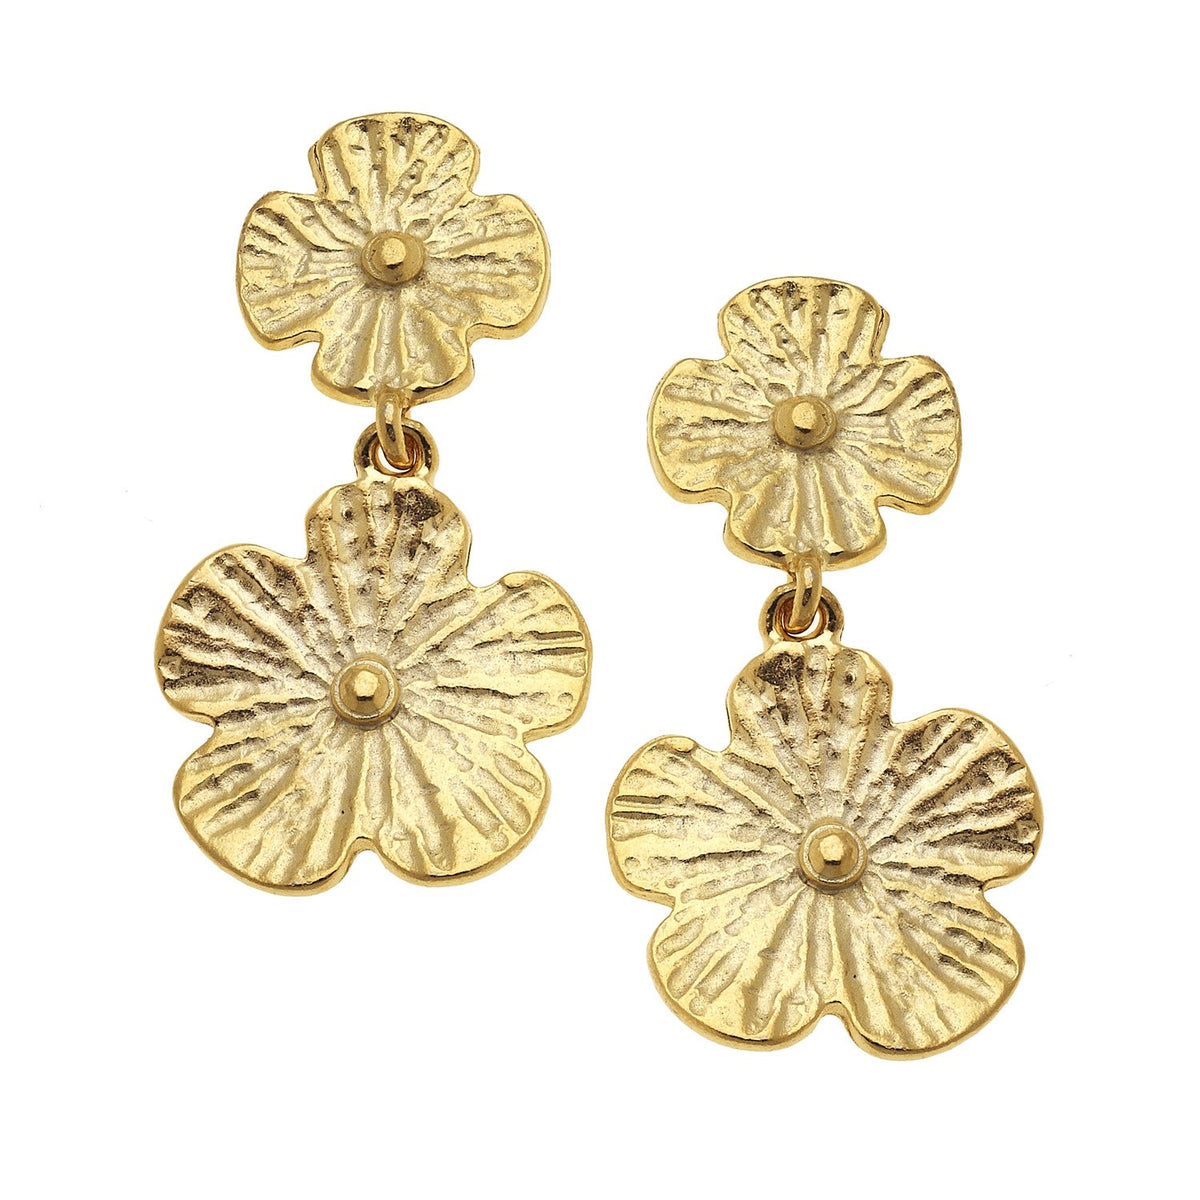 Gold Flower Earrings Studs - Petal I Misahara